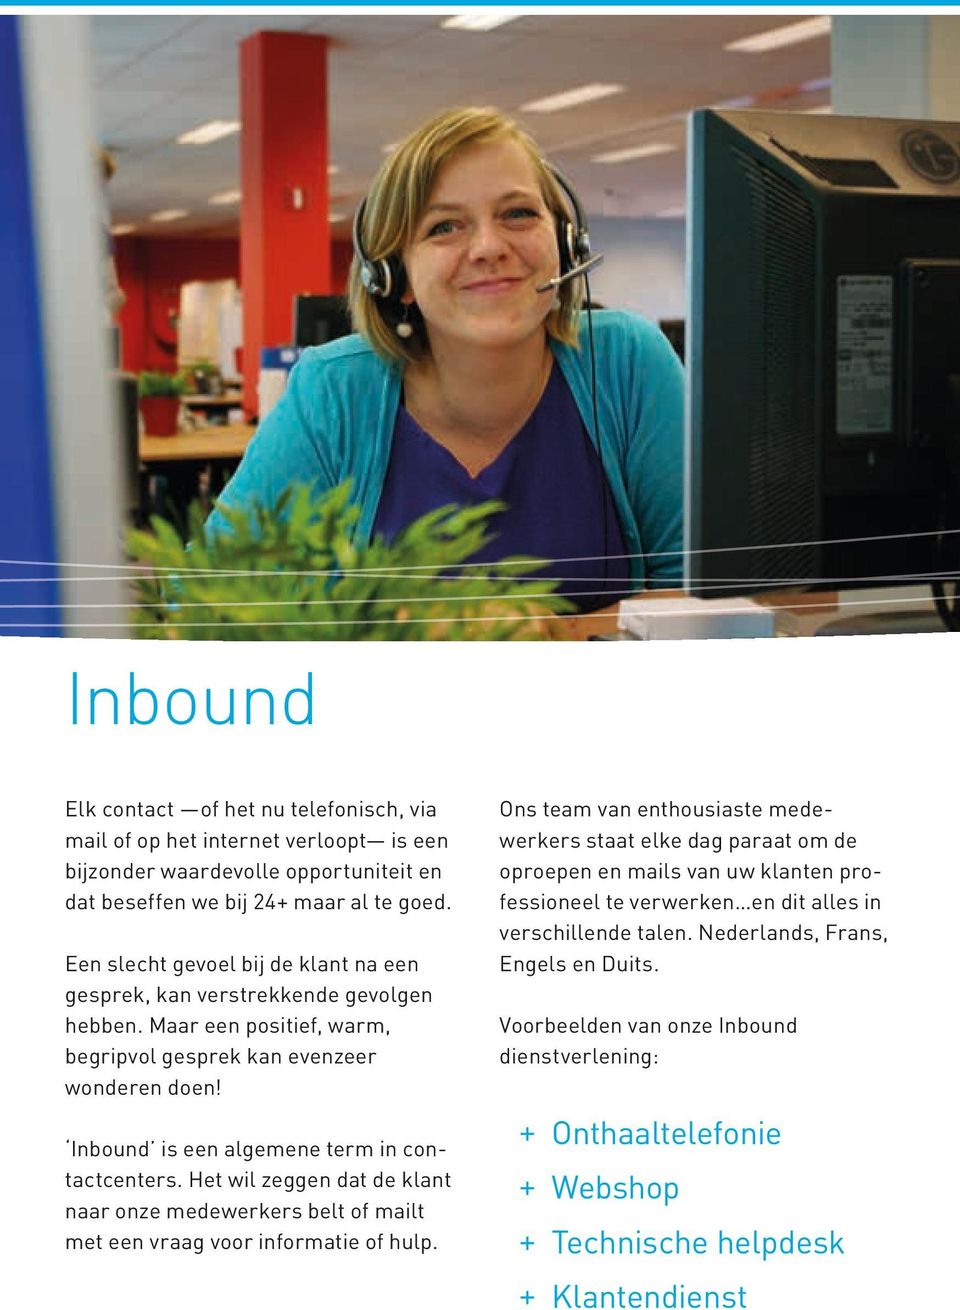 Inbound is een algemene term in contactcenters. Het wil zeggen dat de klant naar onze medewerkers belt of mailt met een vraag voor informatie of hulp.